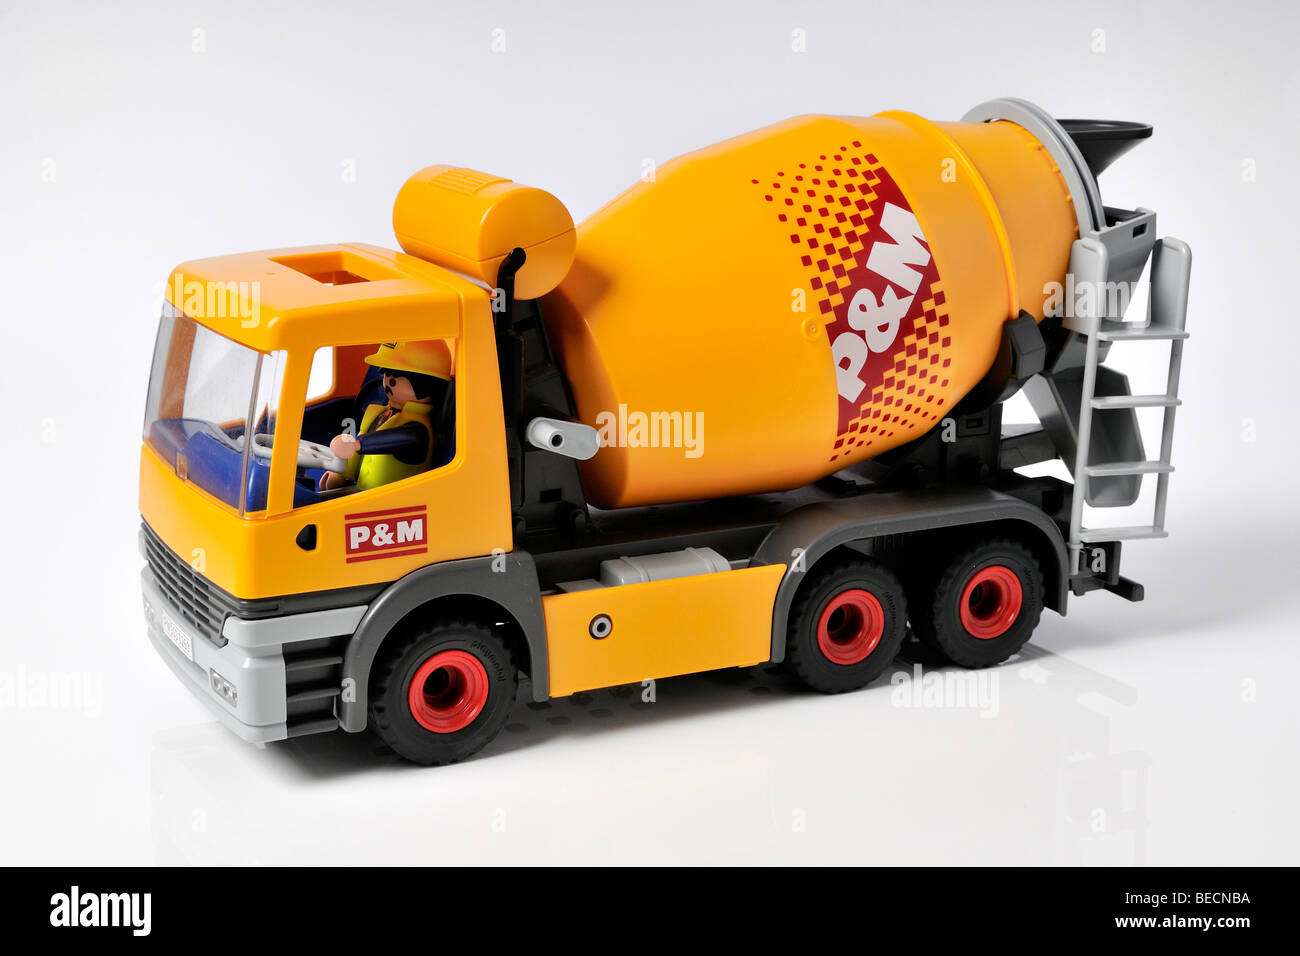 Truck playmobil immagini e fotografie stock ad alta risoluzione - Alamy